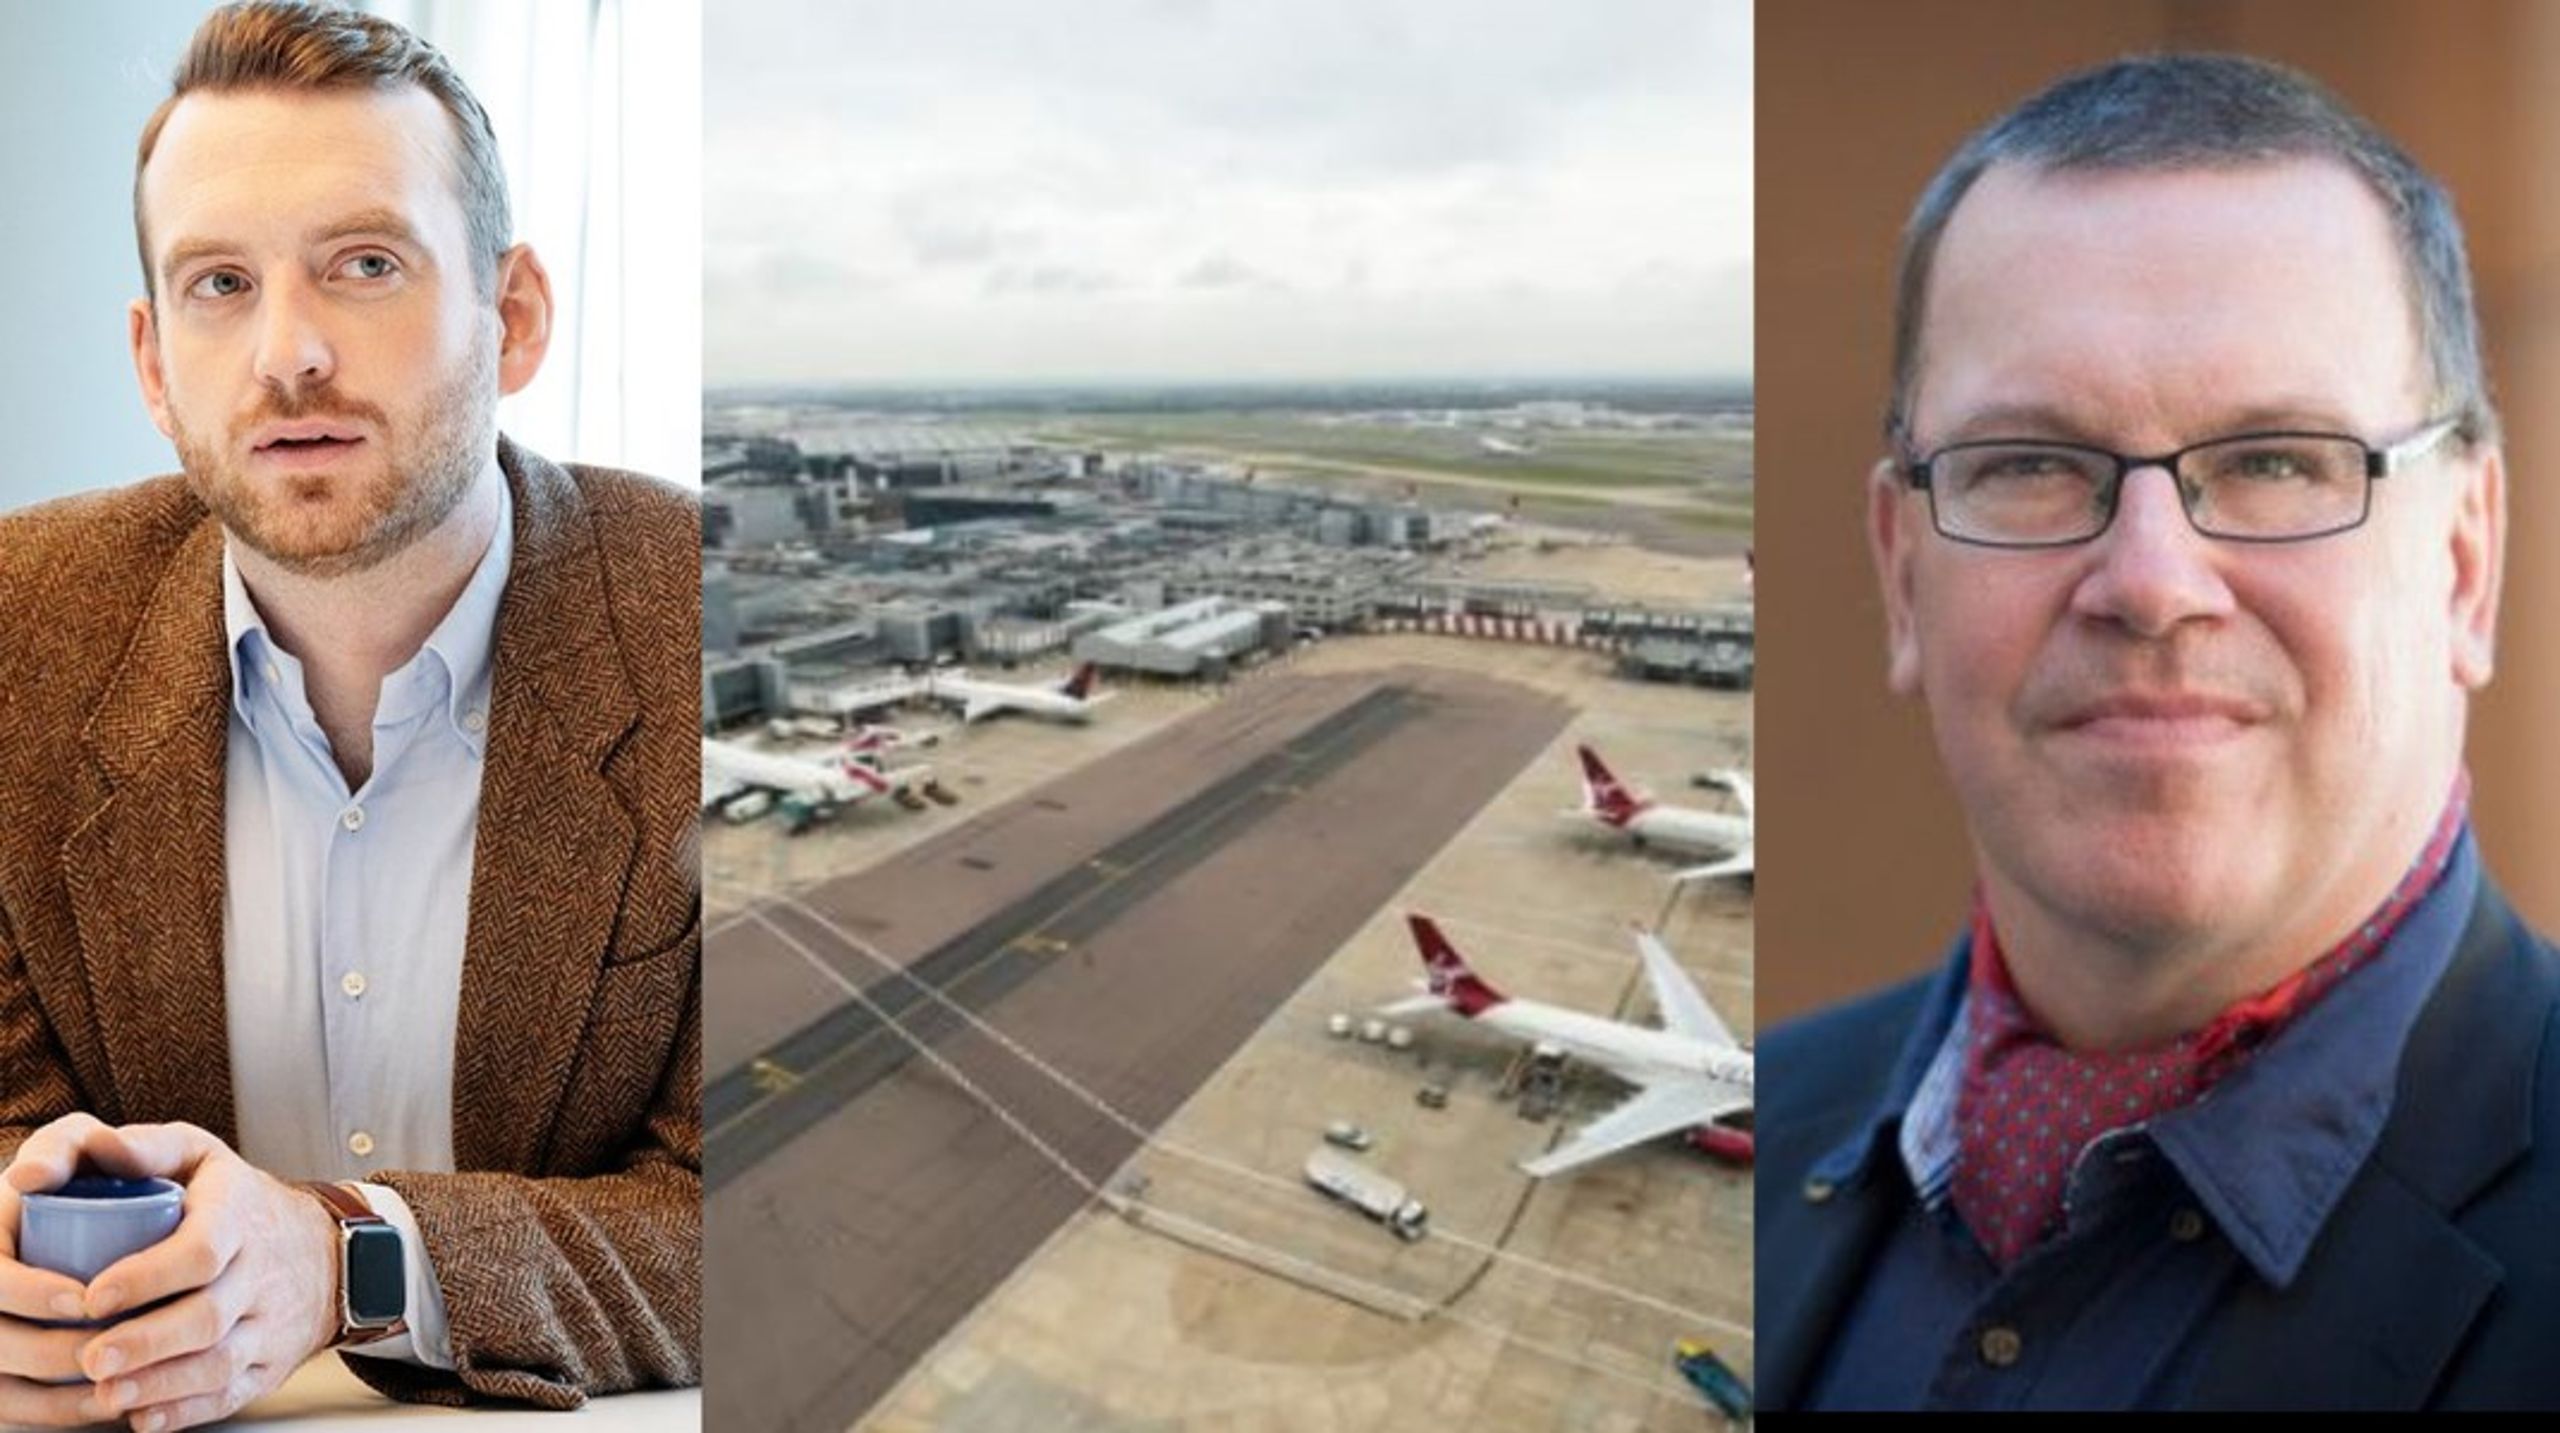 Dalunde (MP) och Bergkvist (S) har skilda meningar om vilka krav som bör ställas på flygets omställning<br>